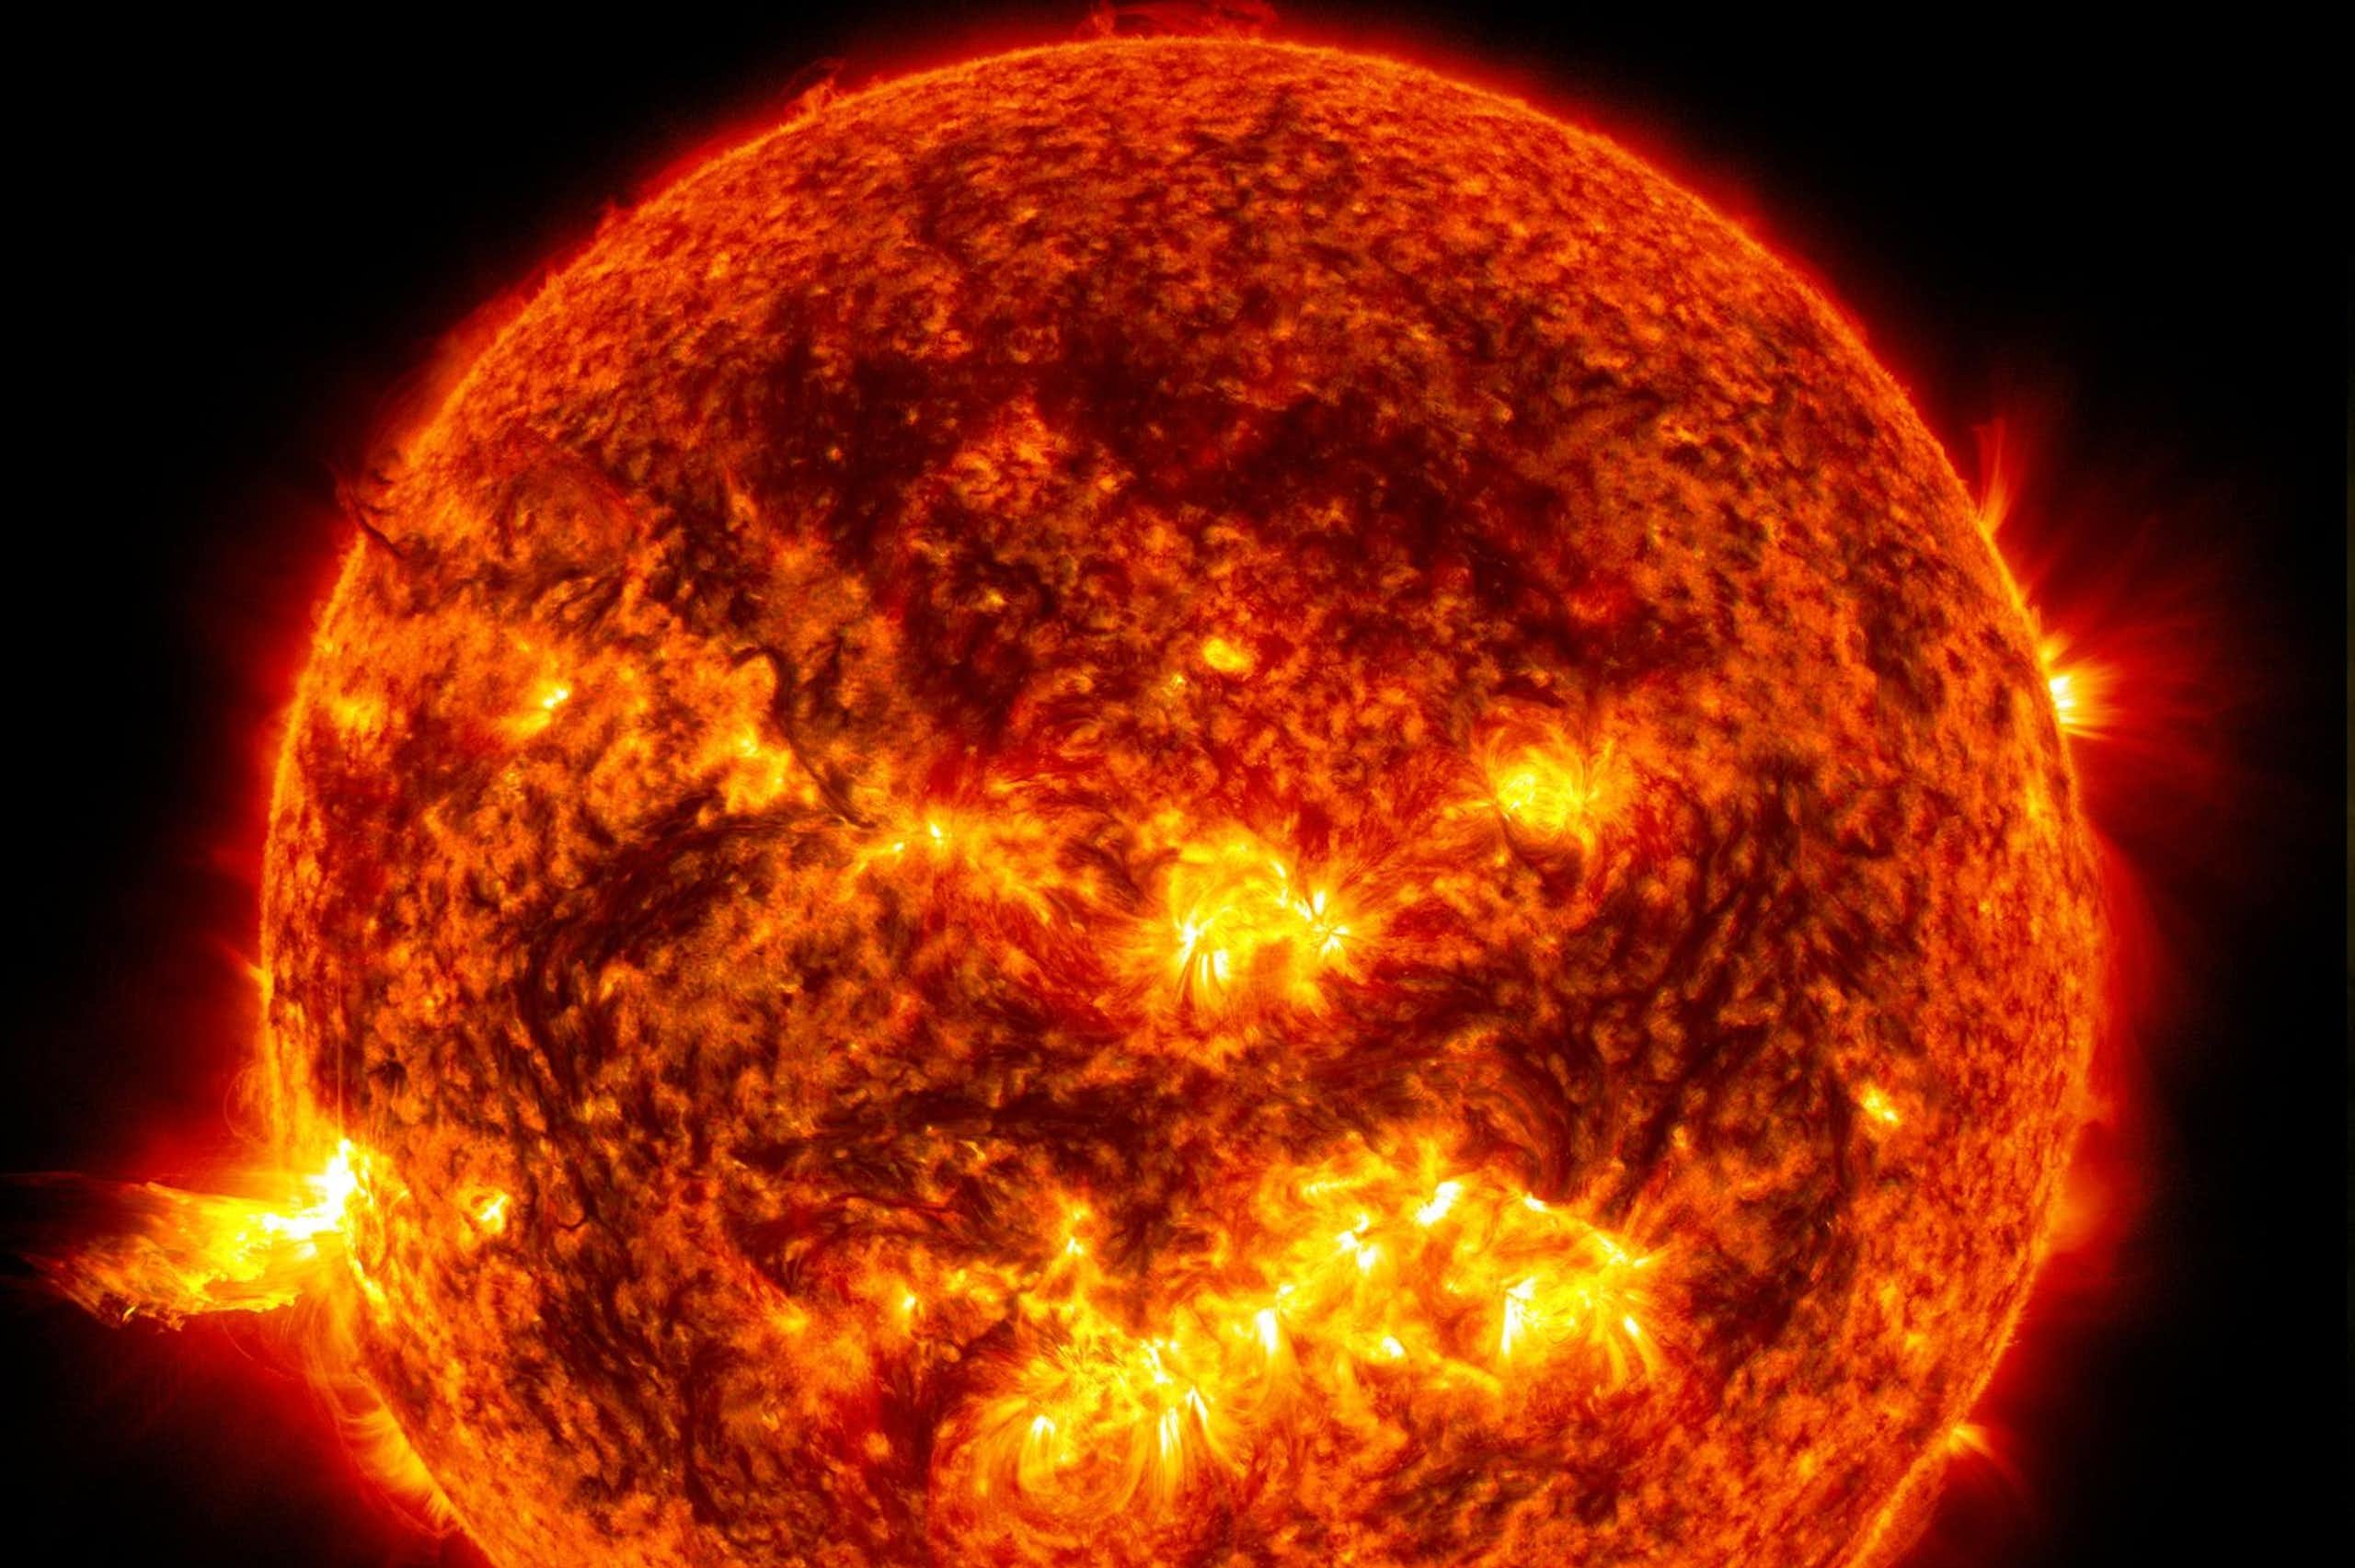 ¿Cómo se quema el Sol si no hay oxígeno en el espacio exterior?